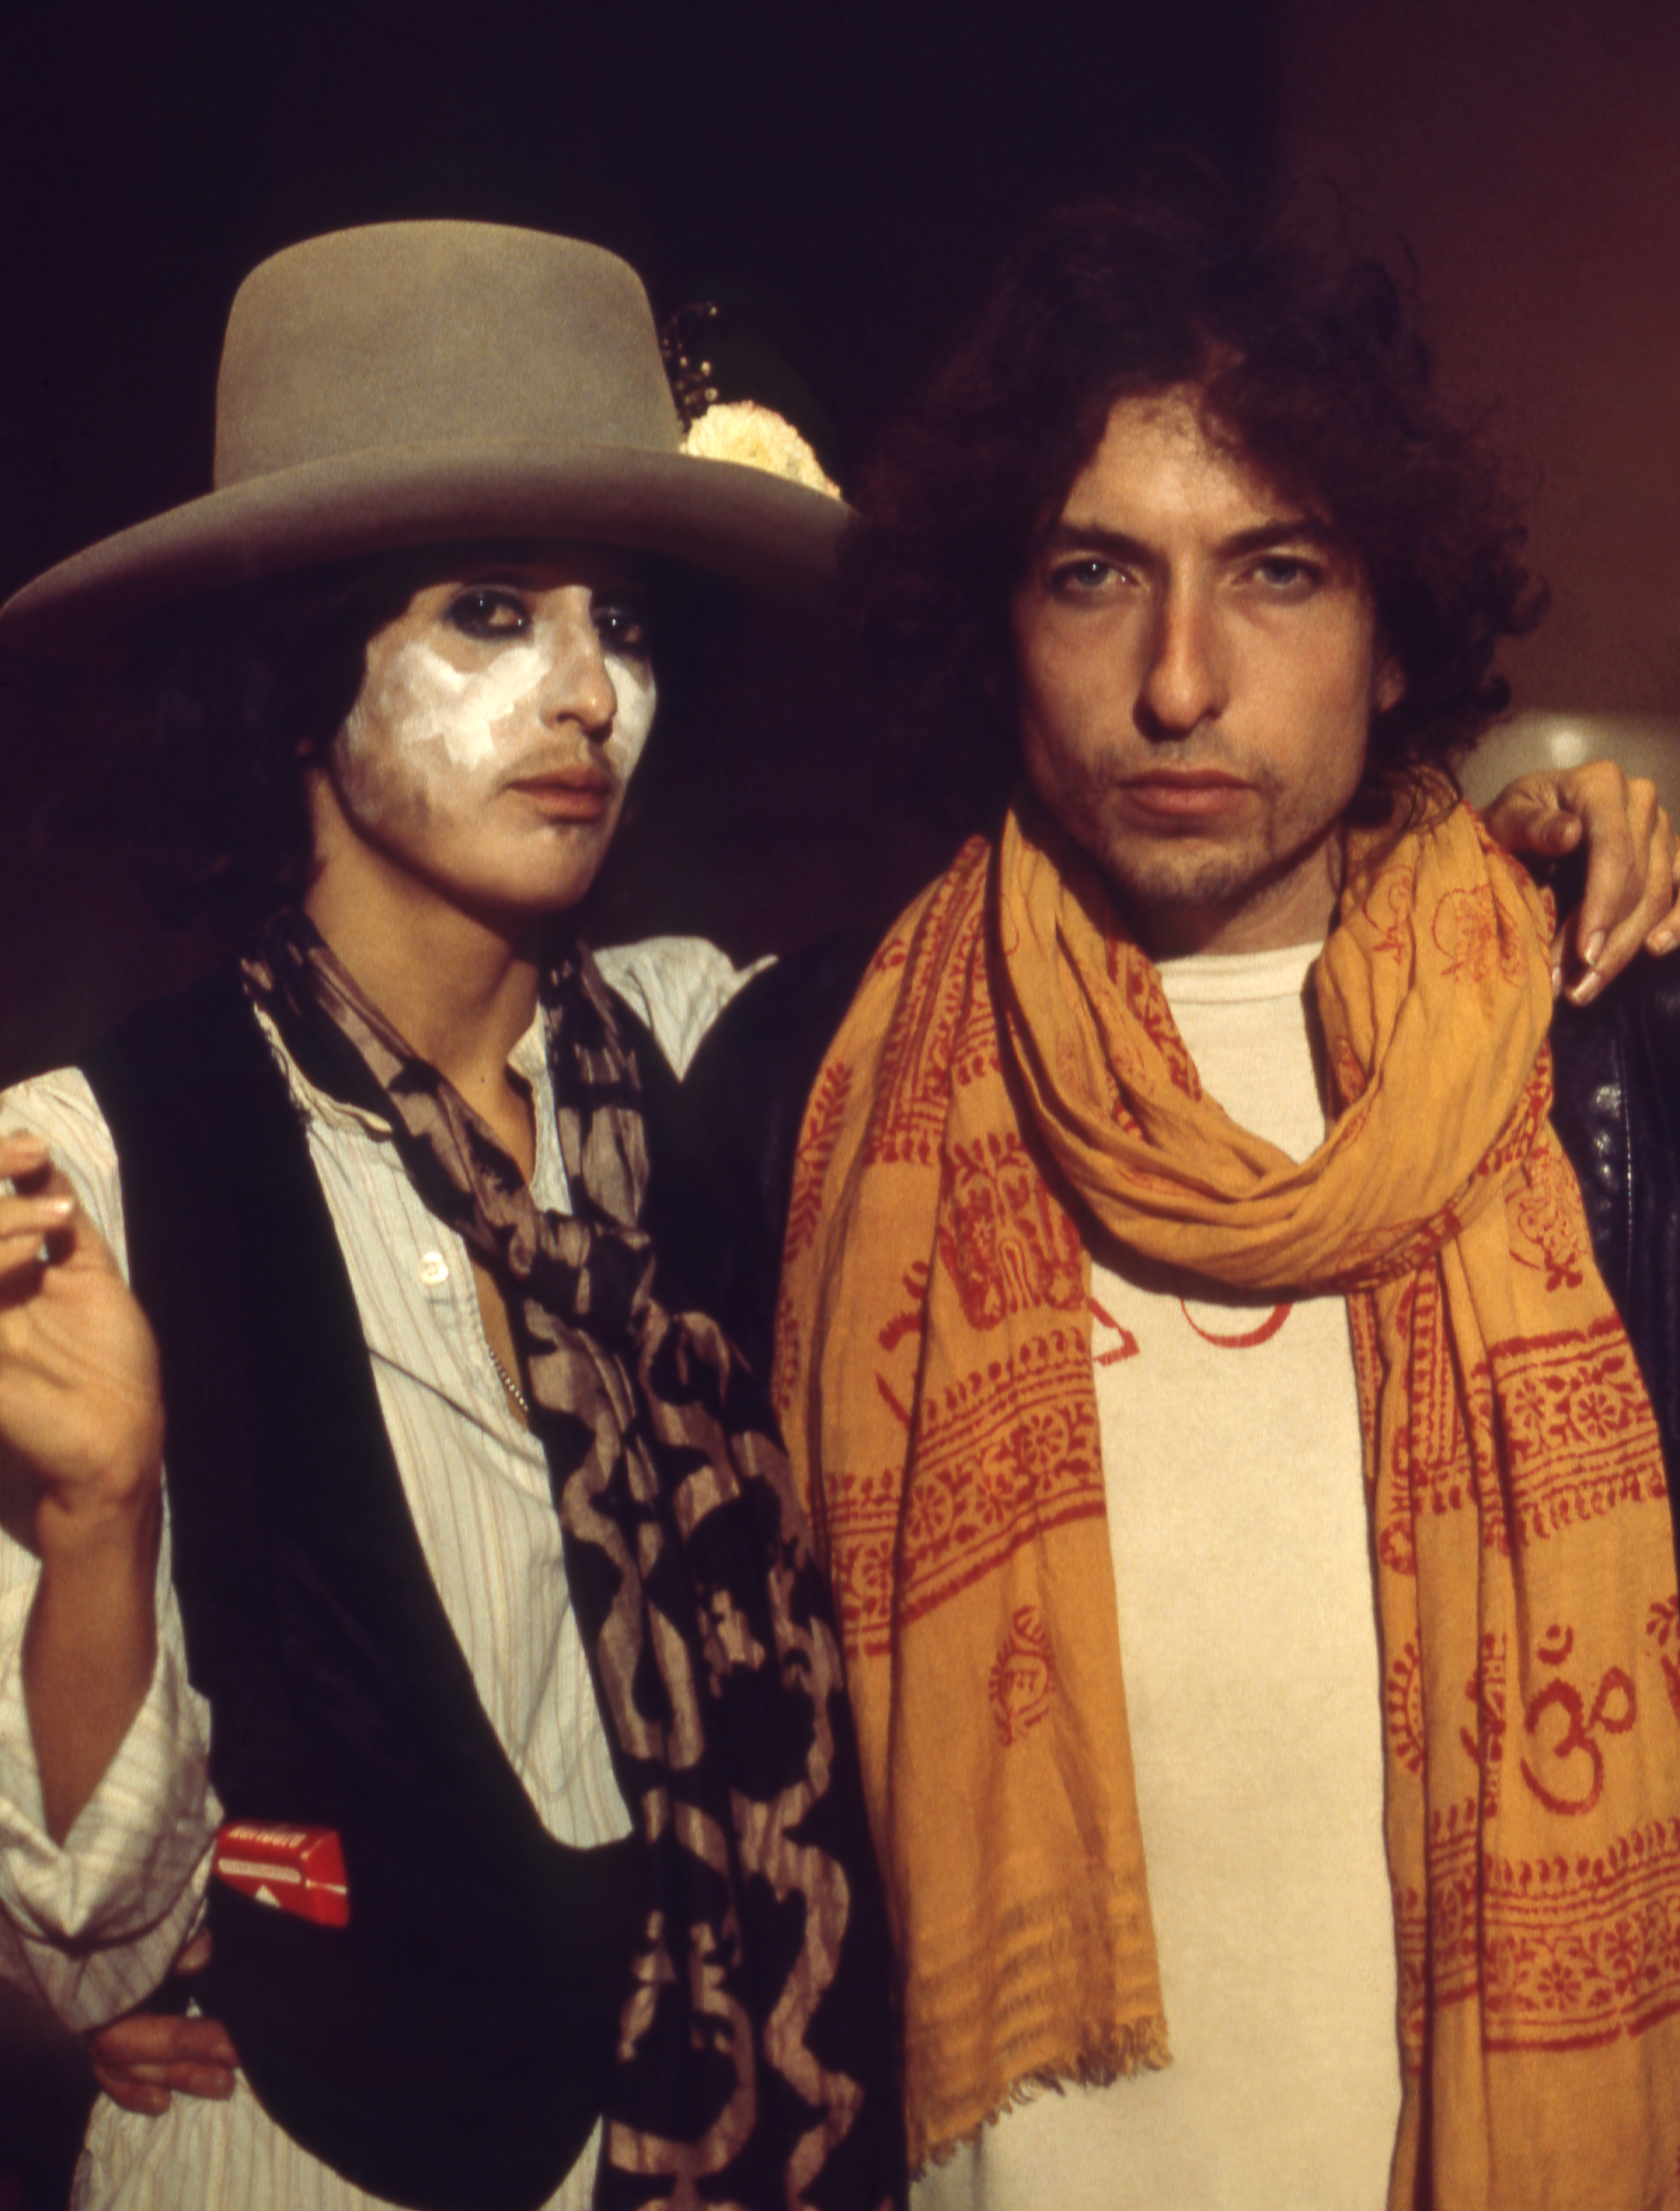 Bob Dylan's <i></noscript>
<p><span style=